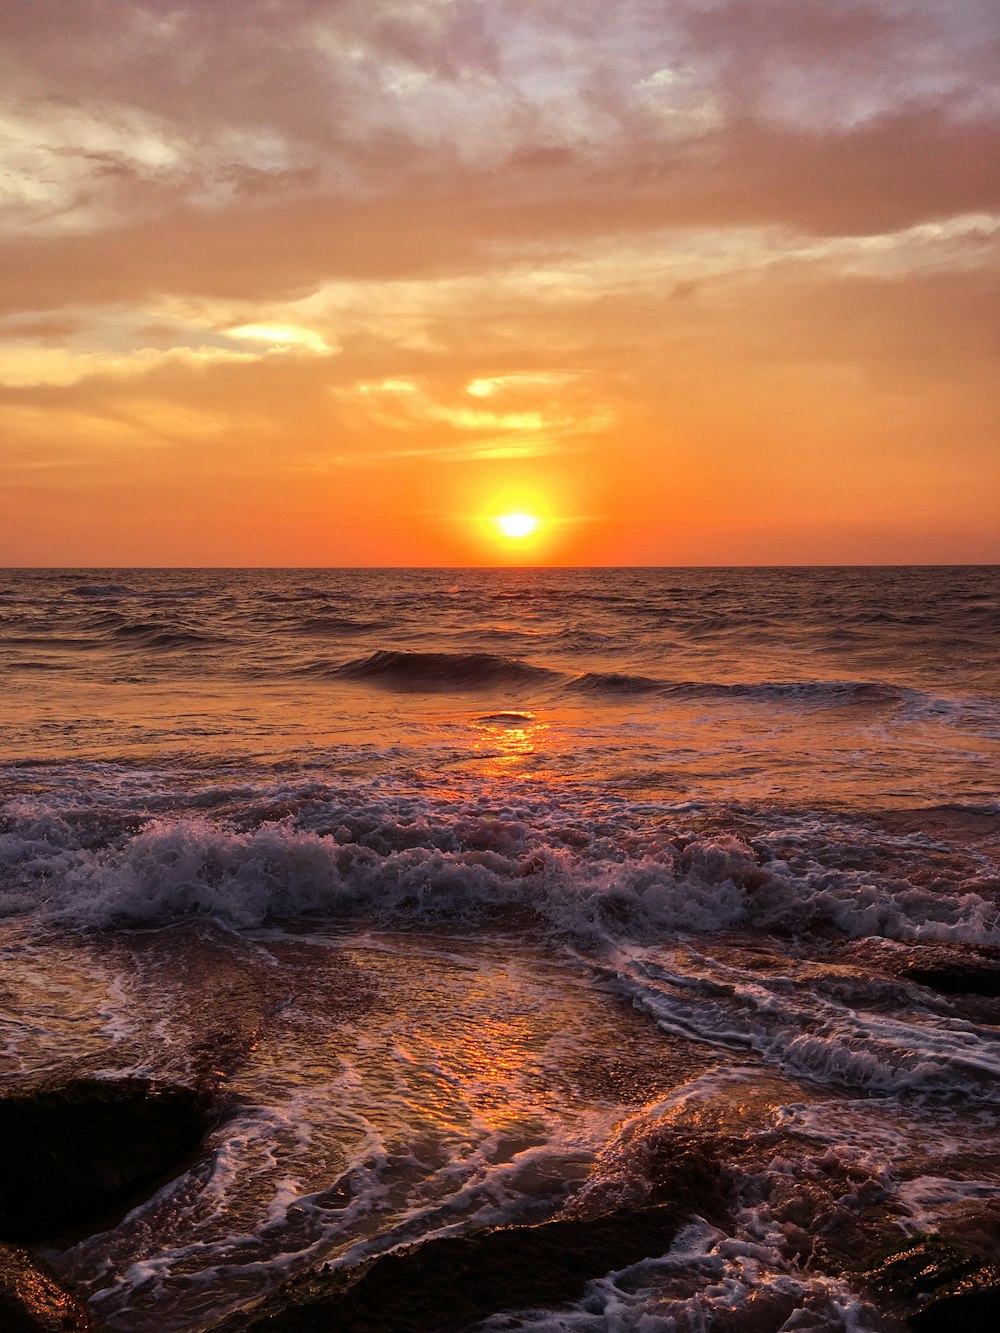 mar en calma en la vista de la puesta del sol